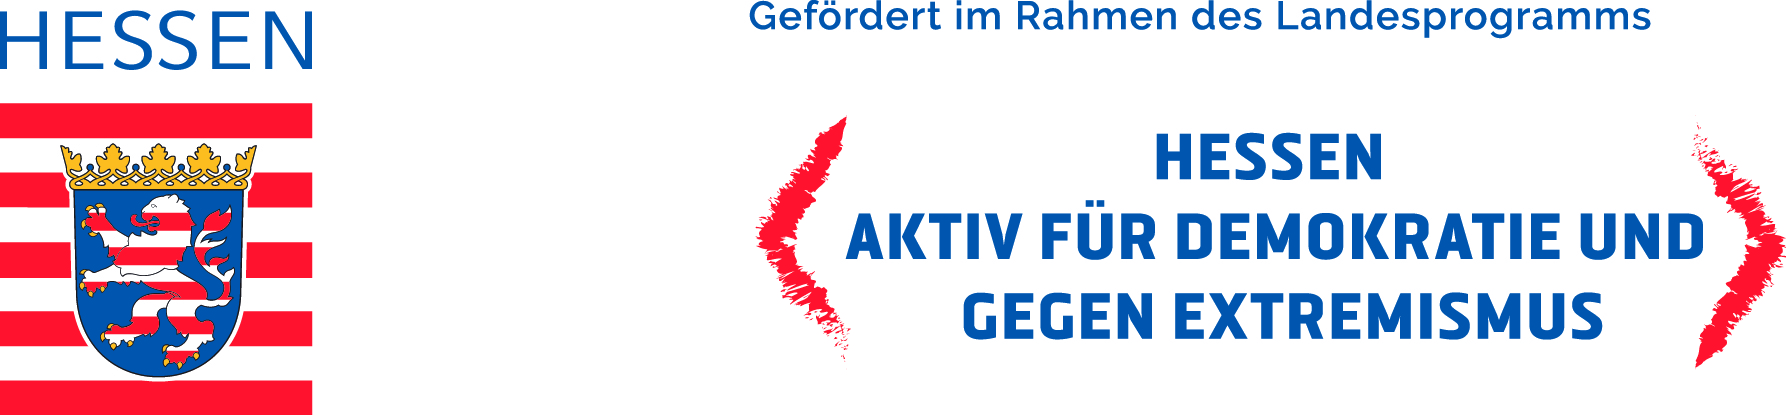 Logo_HESSEN_aktiv_gef_mit_land_4c